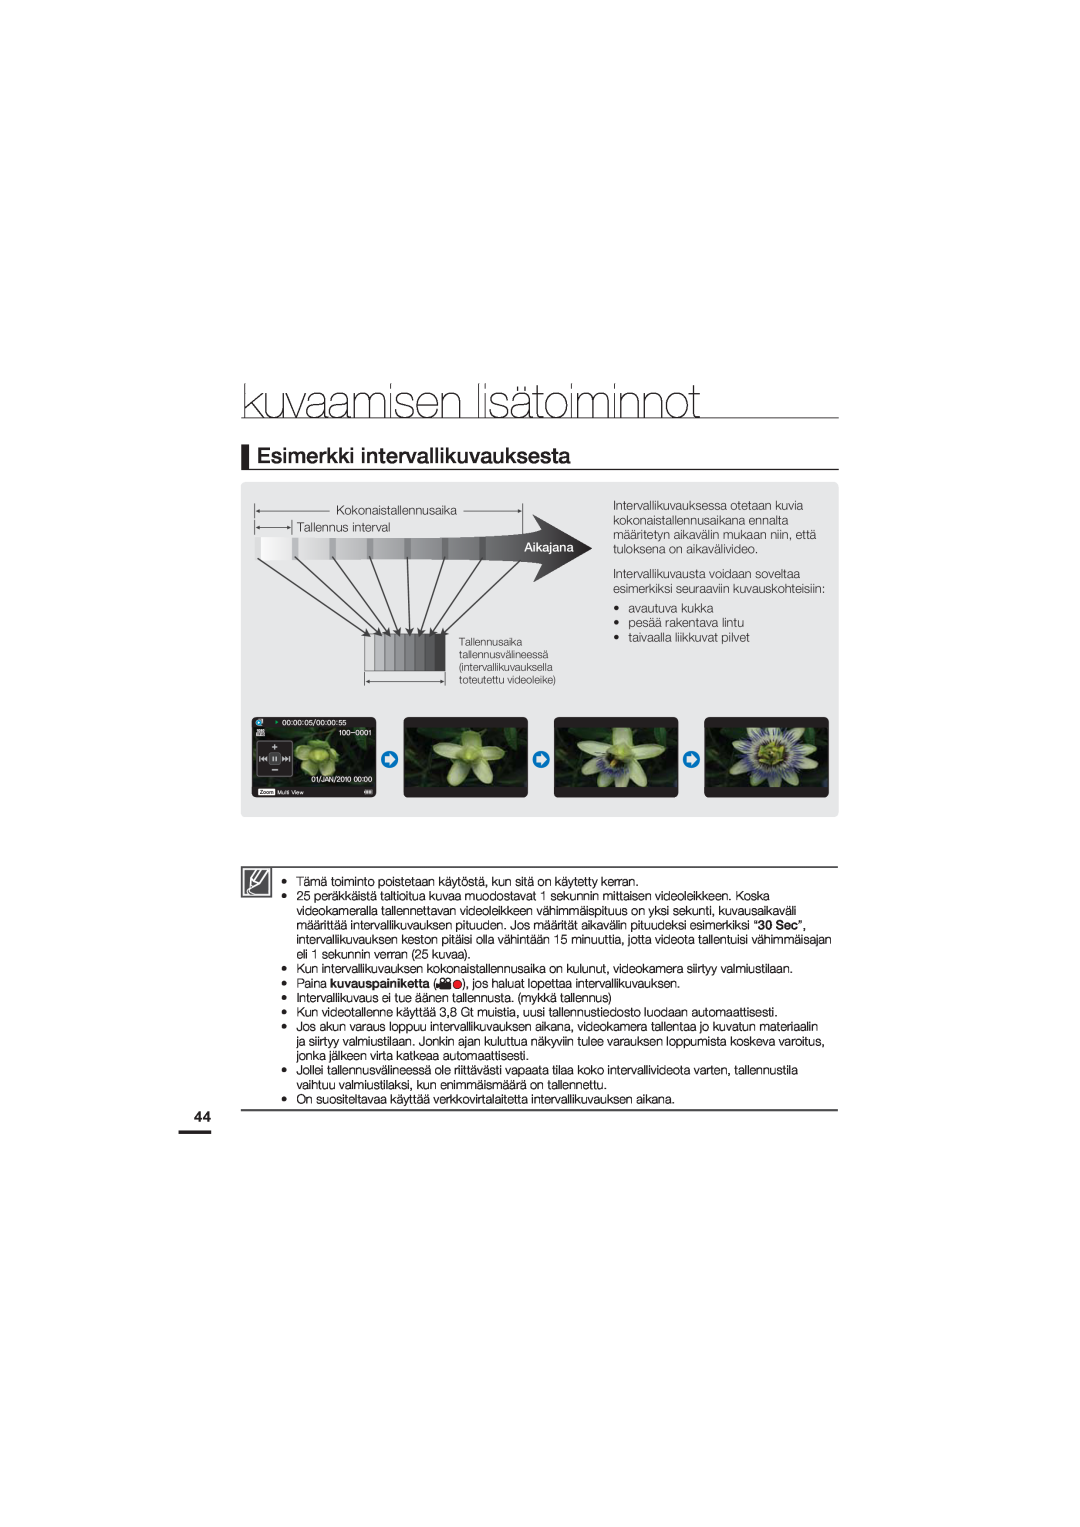 Samsung HMX-U20BP/EDC manual Esimerkki intervallikuvauksesta, kuvaamisen lisätoiminnot, Aikajana 